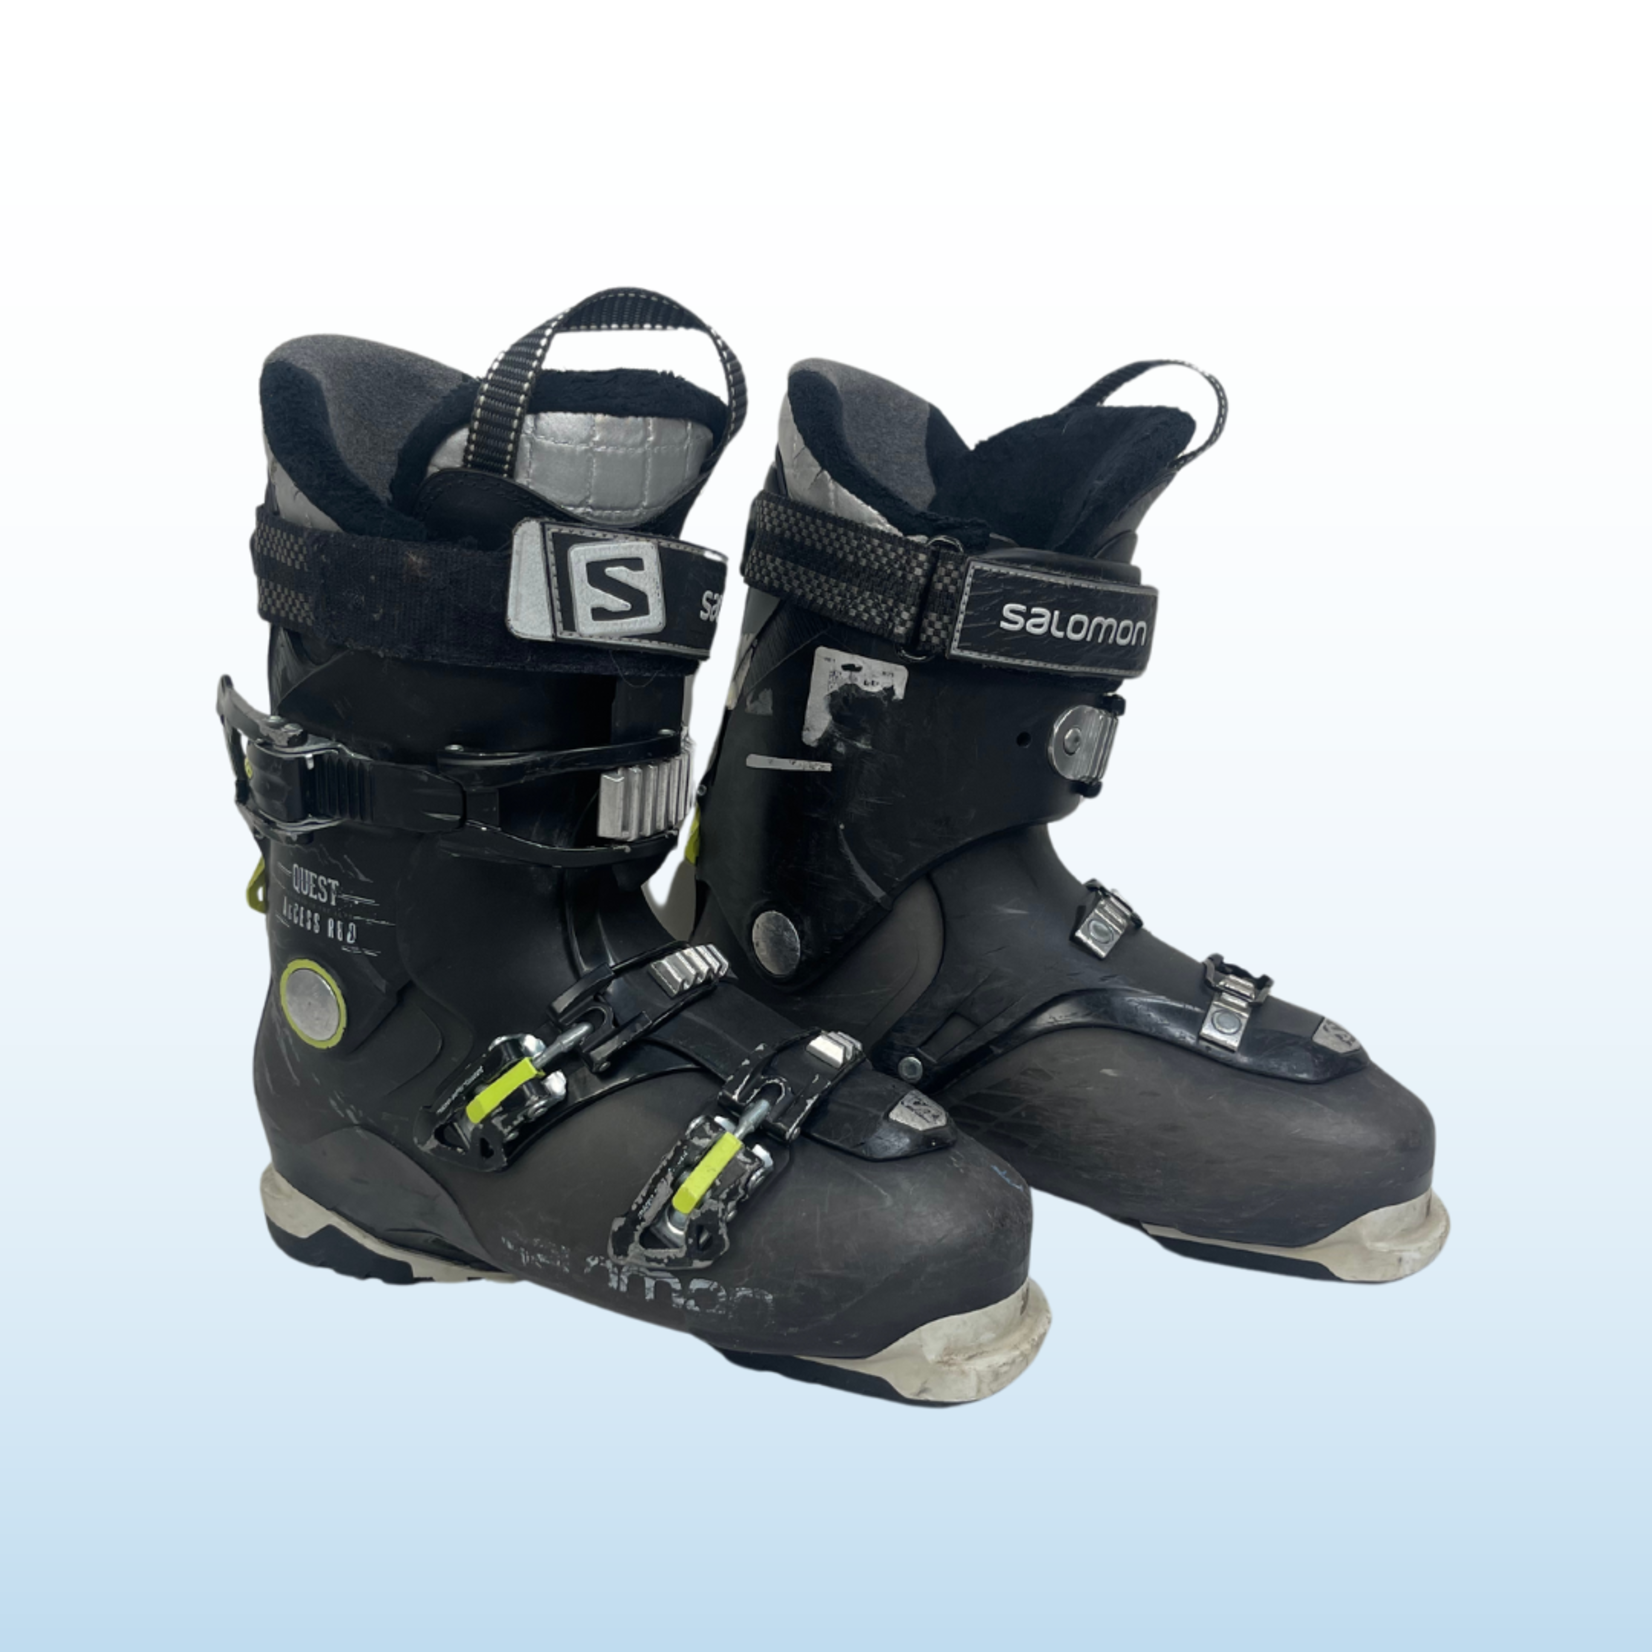 Salomon Salomon Quest Access R80 Ski Boots, Green/Black